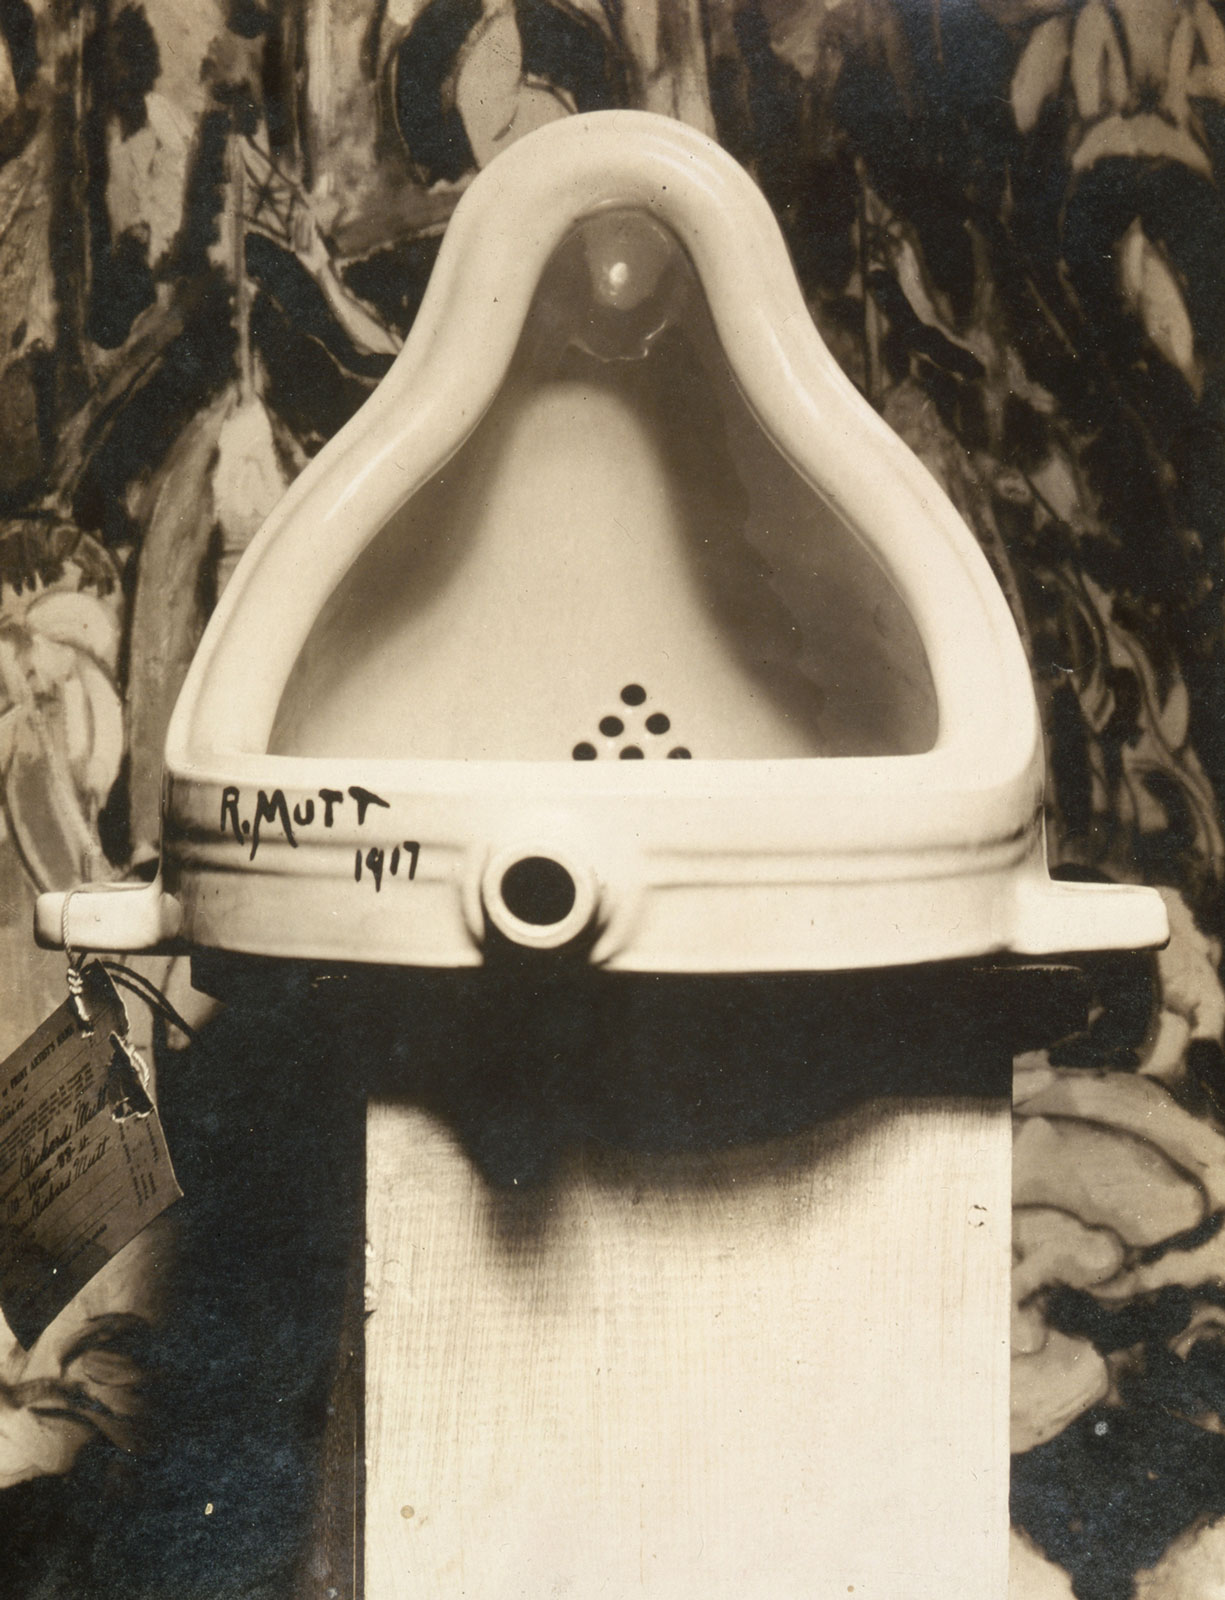 Marcel_Duchamp_1917_Fountain_photograph_by_Alfred_Stieglitz_web